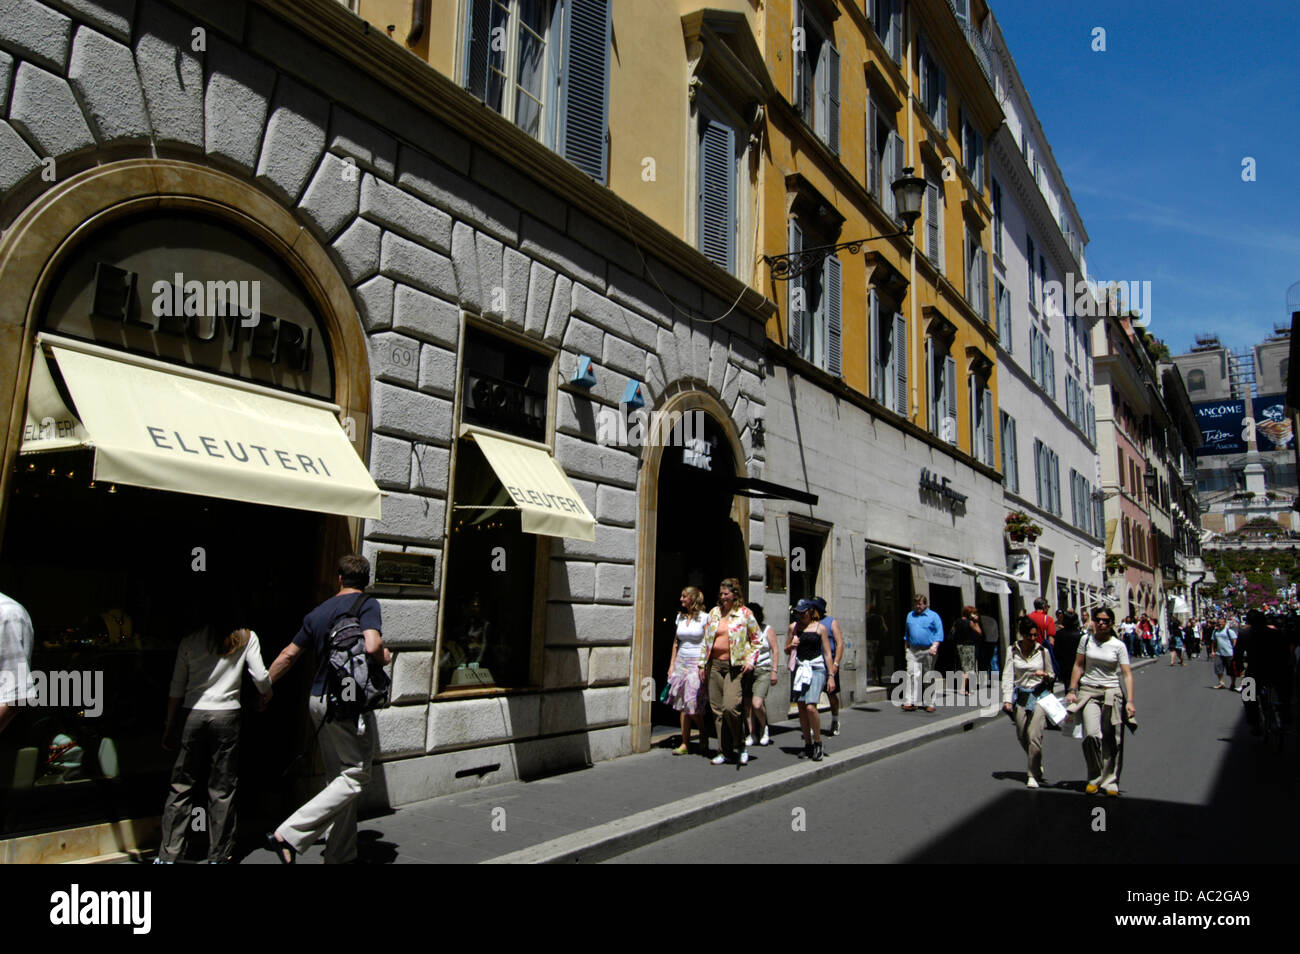 Shopping on Via Condotti, Rome Italy Stock Photo